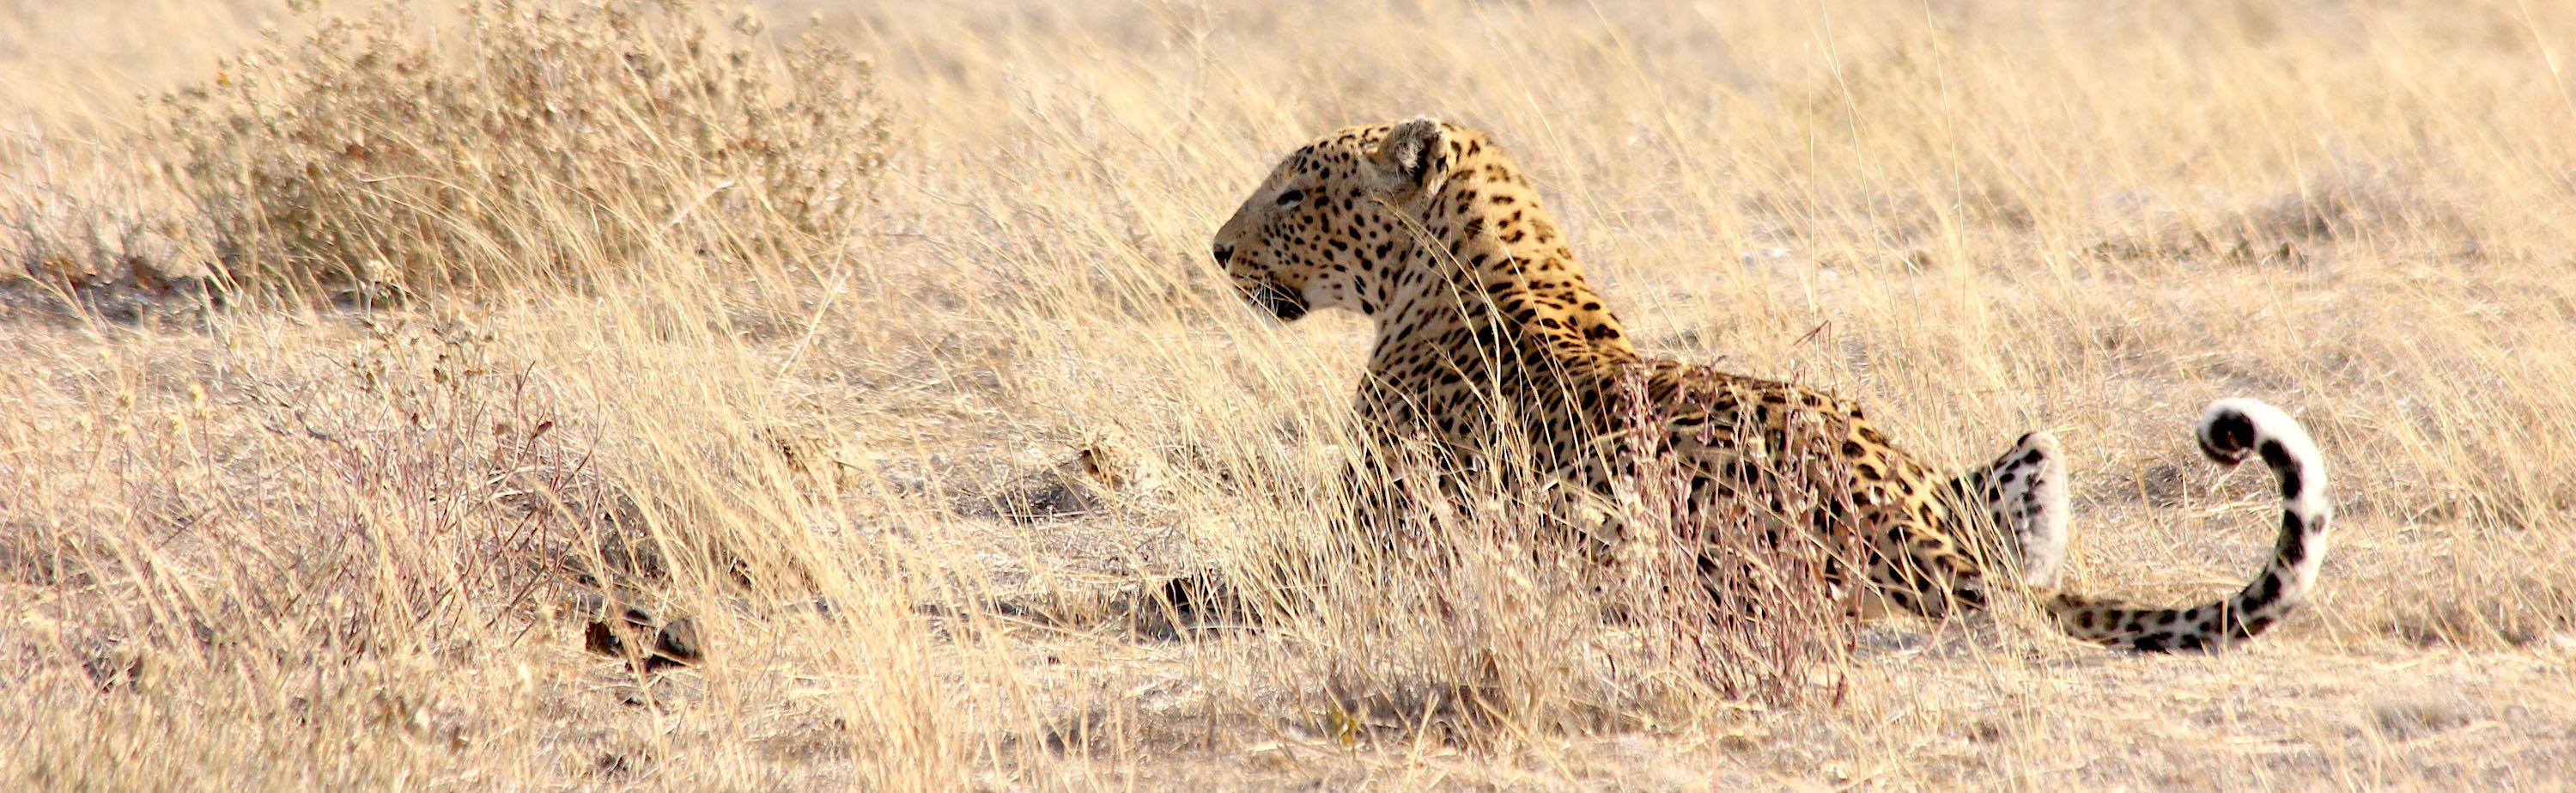 A leopard stalks its prey.